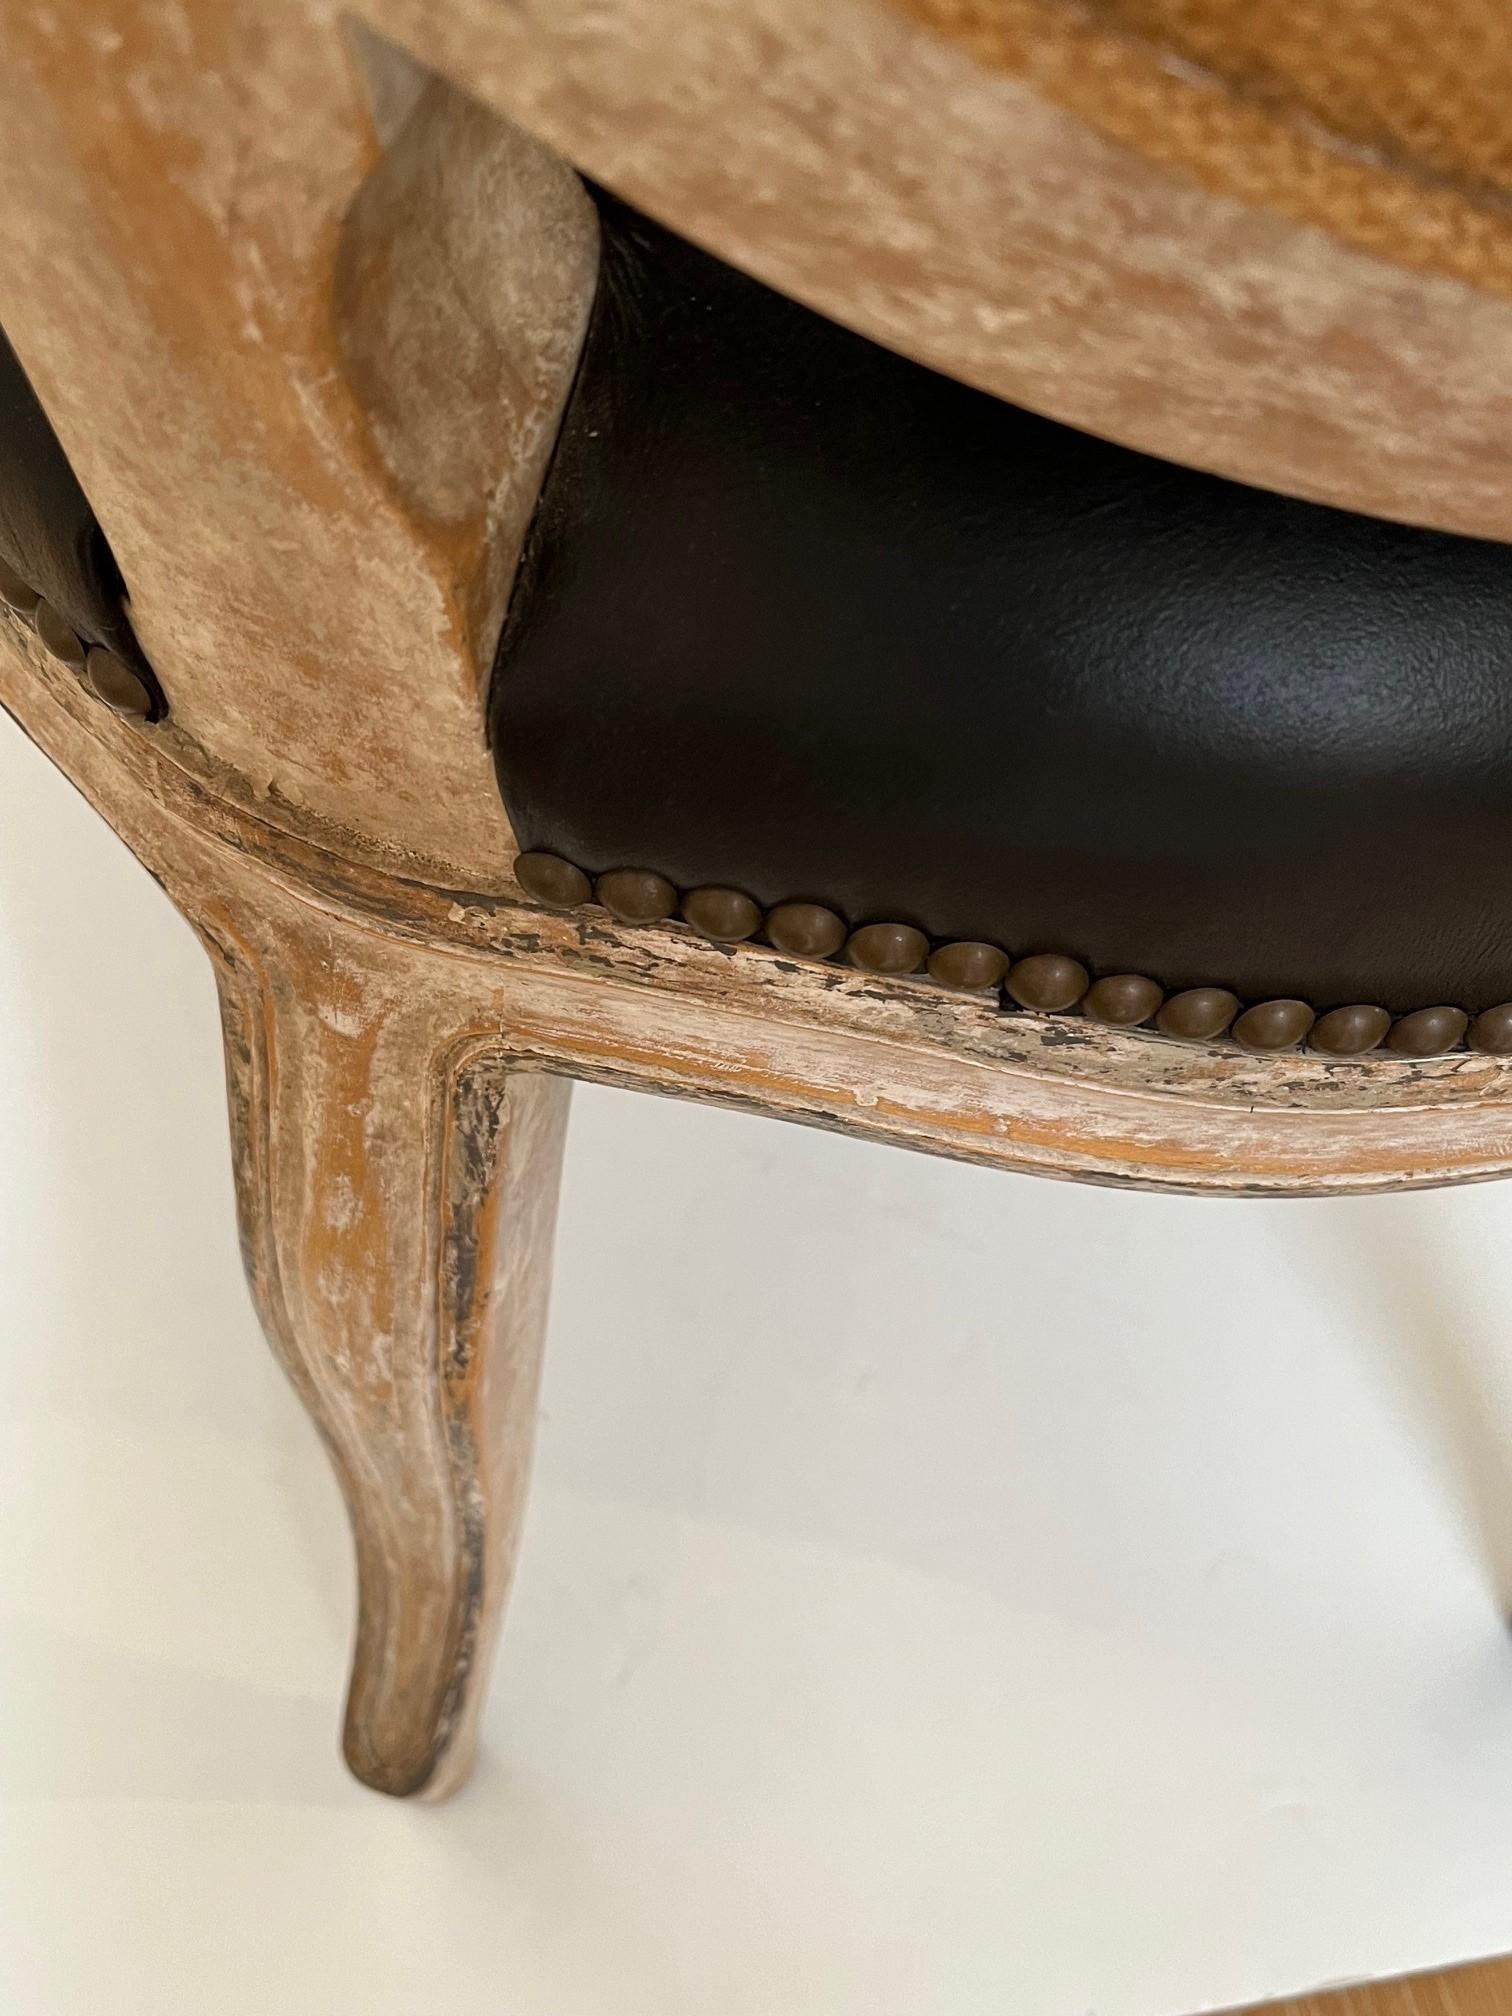 Chaise d'appoint de salle à manger de style Louis XV, fabriquée sur commande, rembourrée en cuir noir avec garniture de tête de clou en laiton antique à l'assise et à l'intérieur du dossier ovale, cadre en bois massif, ceci est un modèle de salle